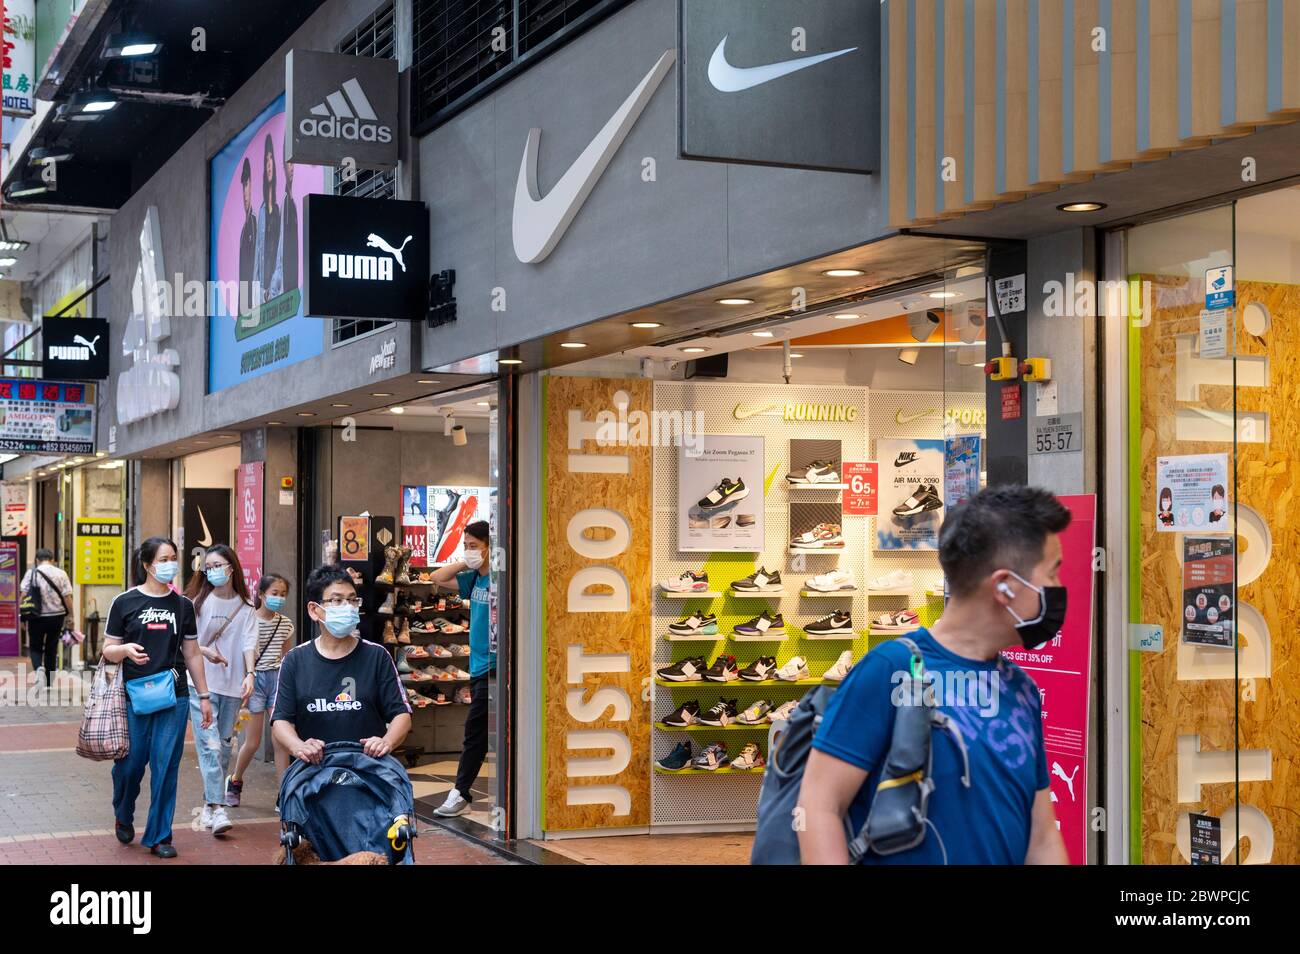 Marcas multinacionales de ropa deportiva Adidas y vistos en una tienda en Hong Kong Fotografía de stock -